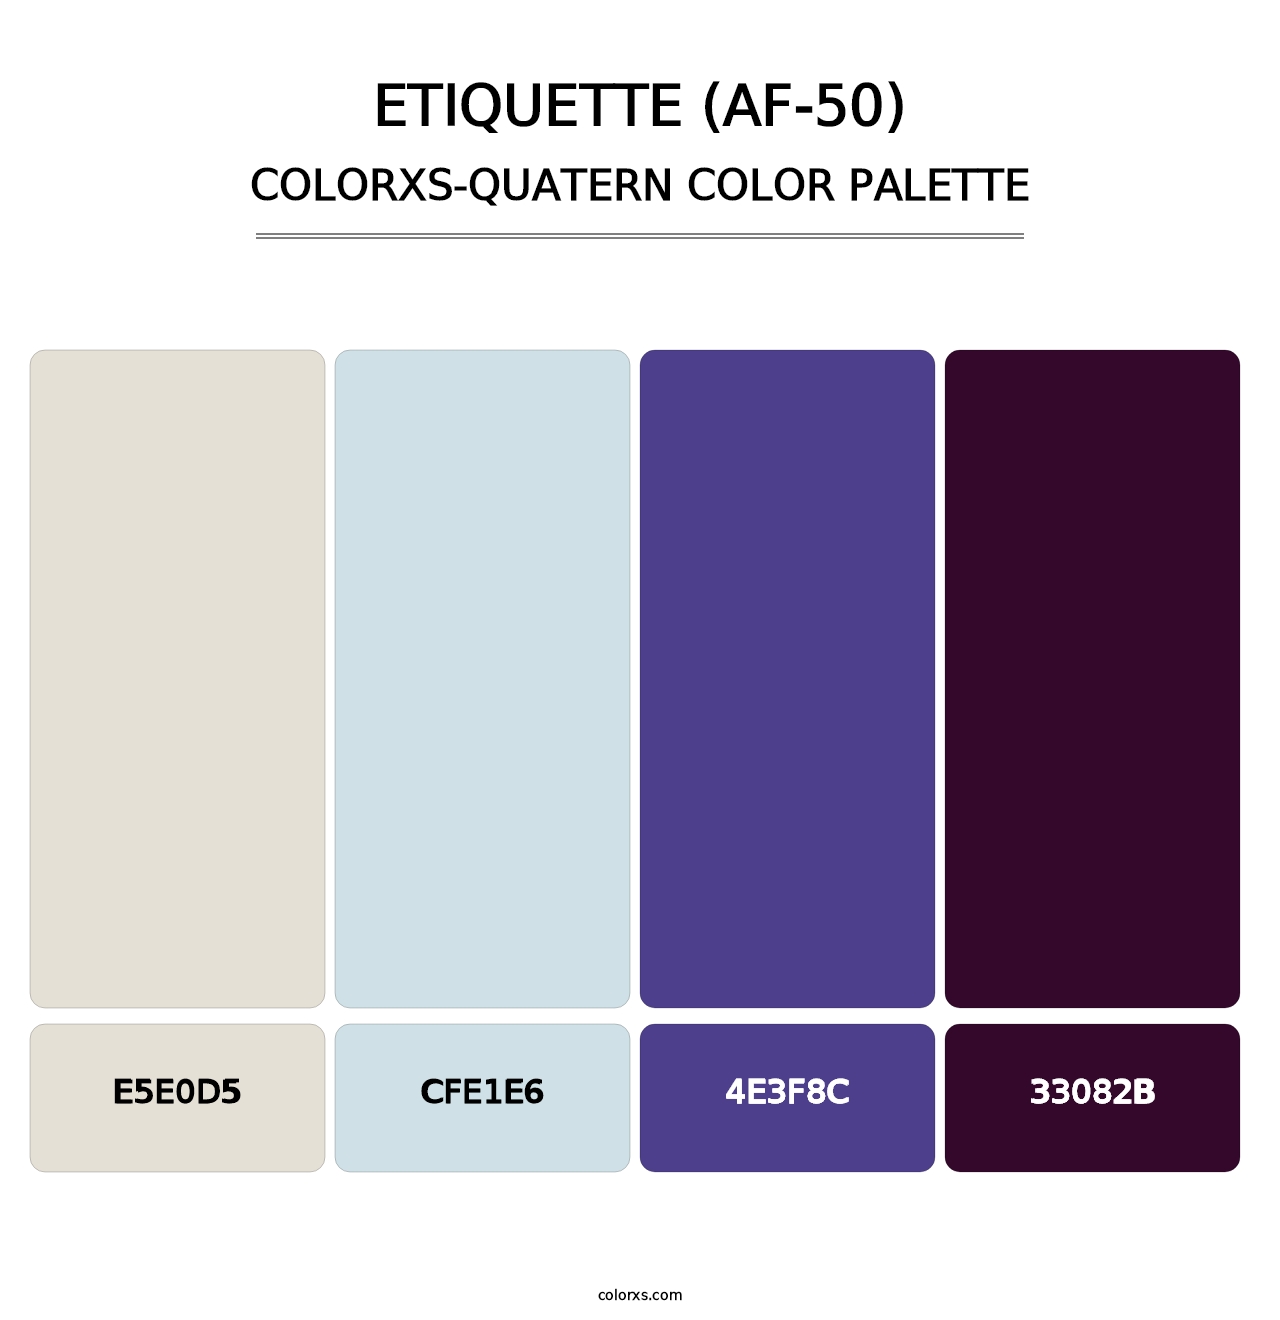 Etiquette (AF-50) - Colorxs Quatern Palette